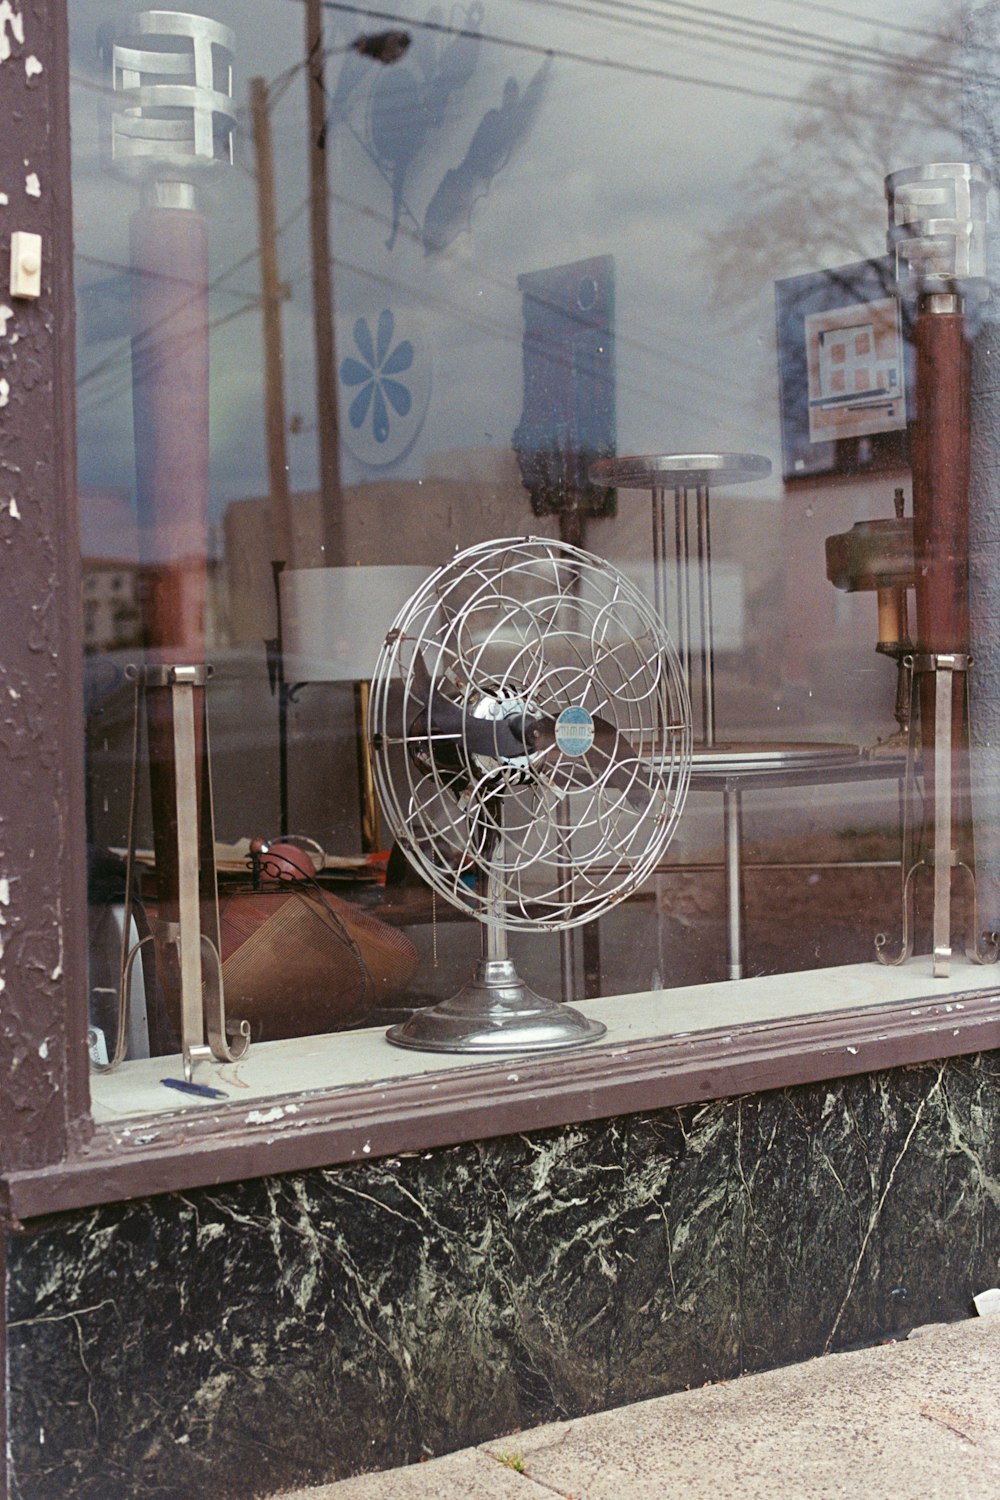 a window that has a fan in it